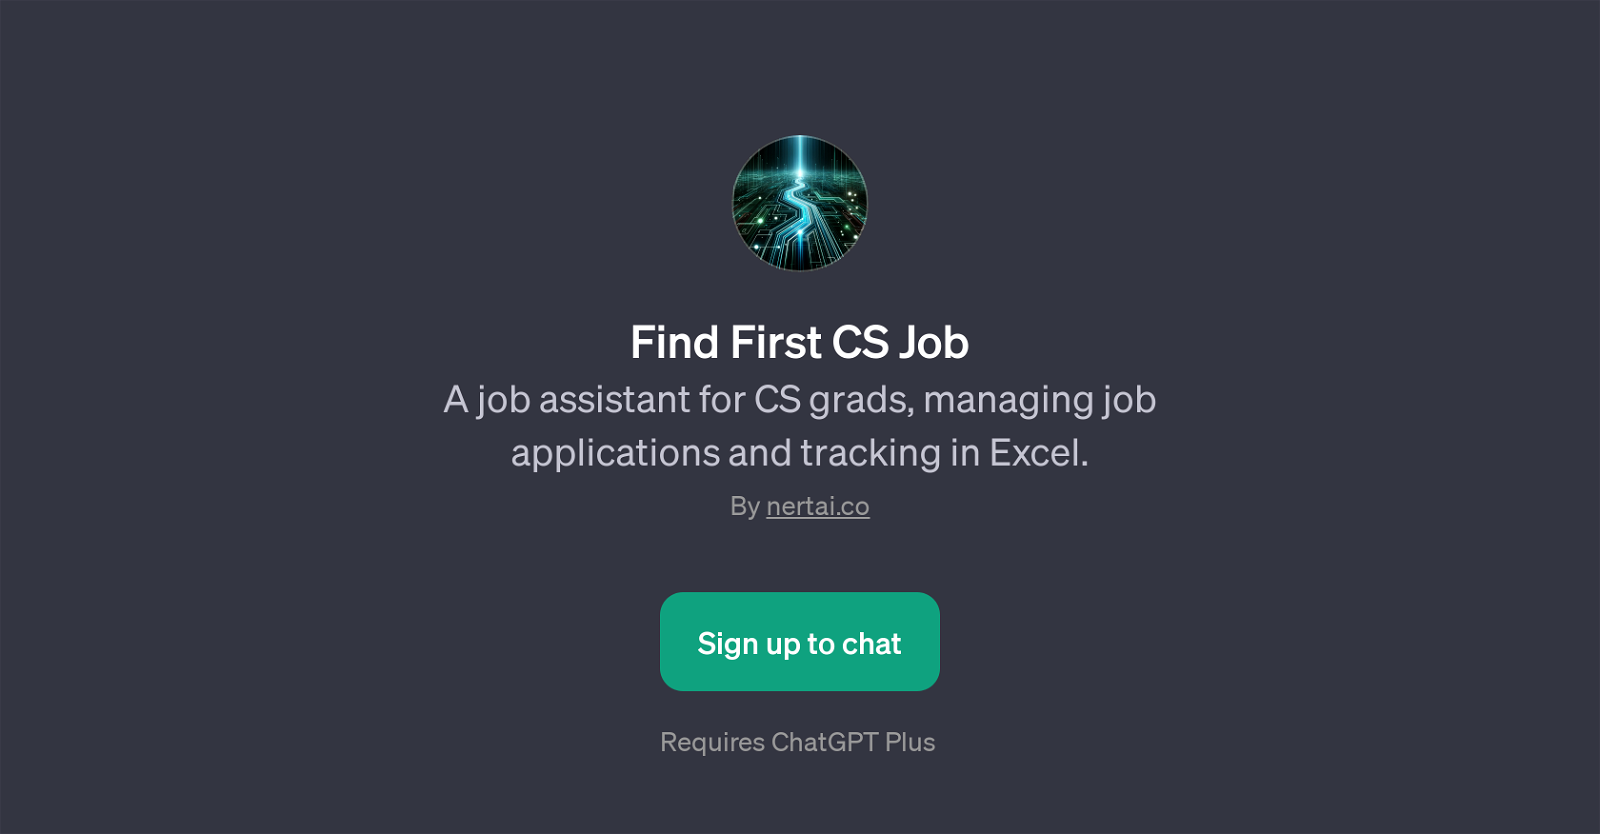 Find First CS Job website